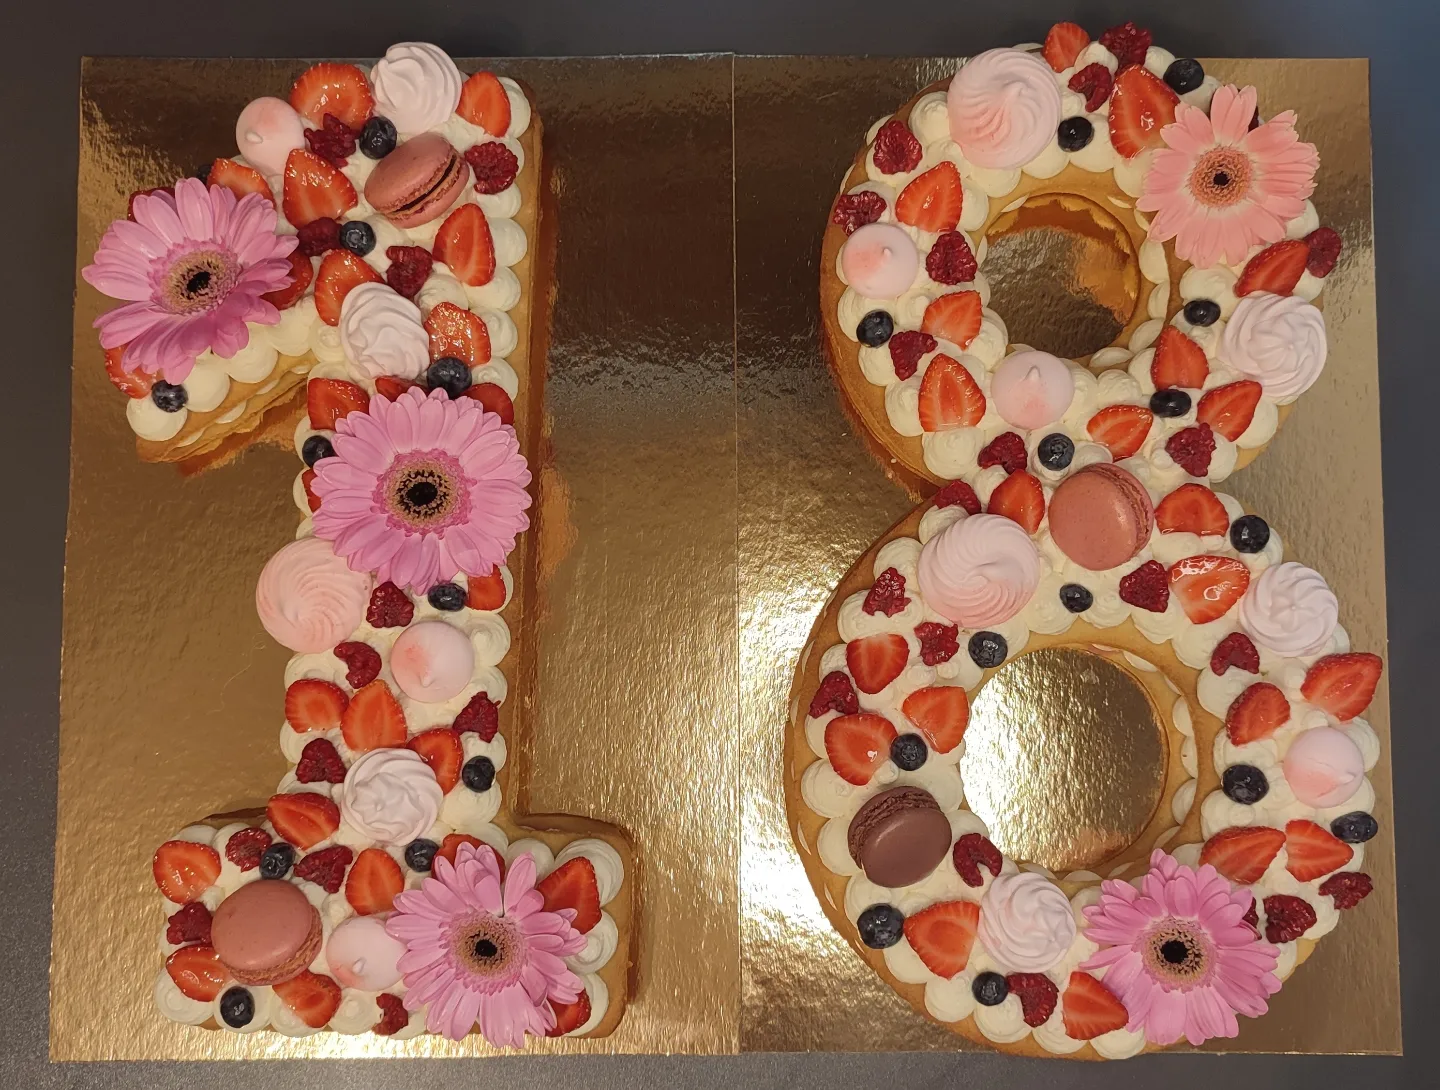 Number cake décoré : 
Mousse mascarpone vanille et fruits rouges